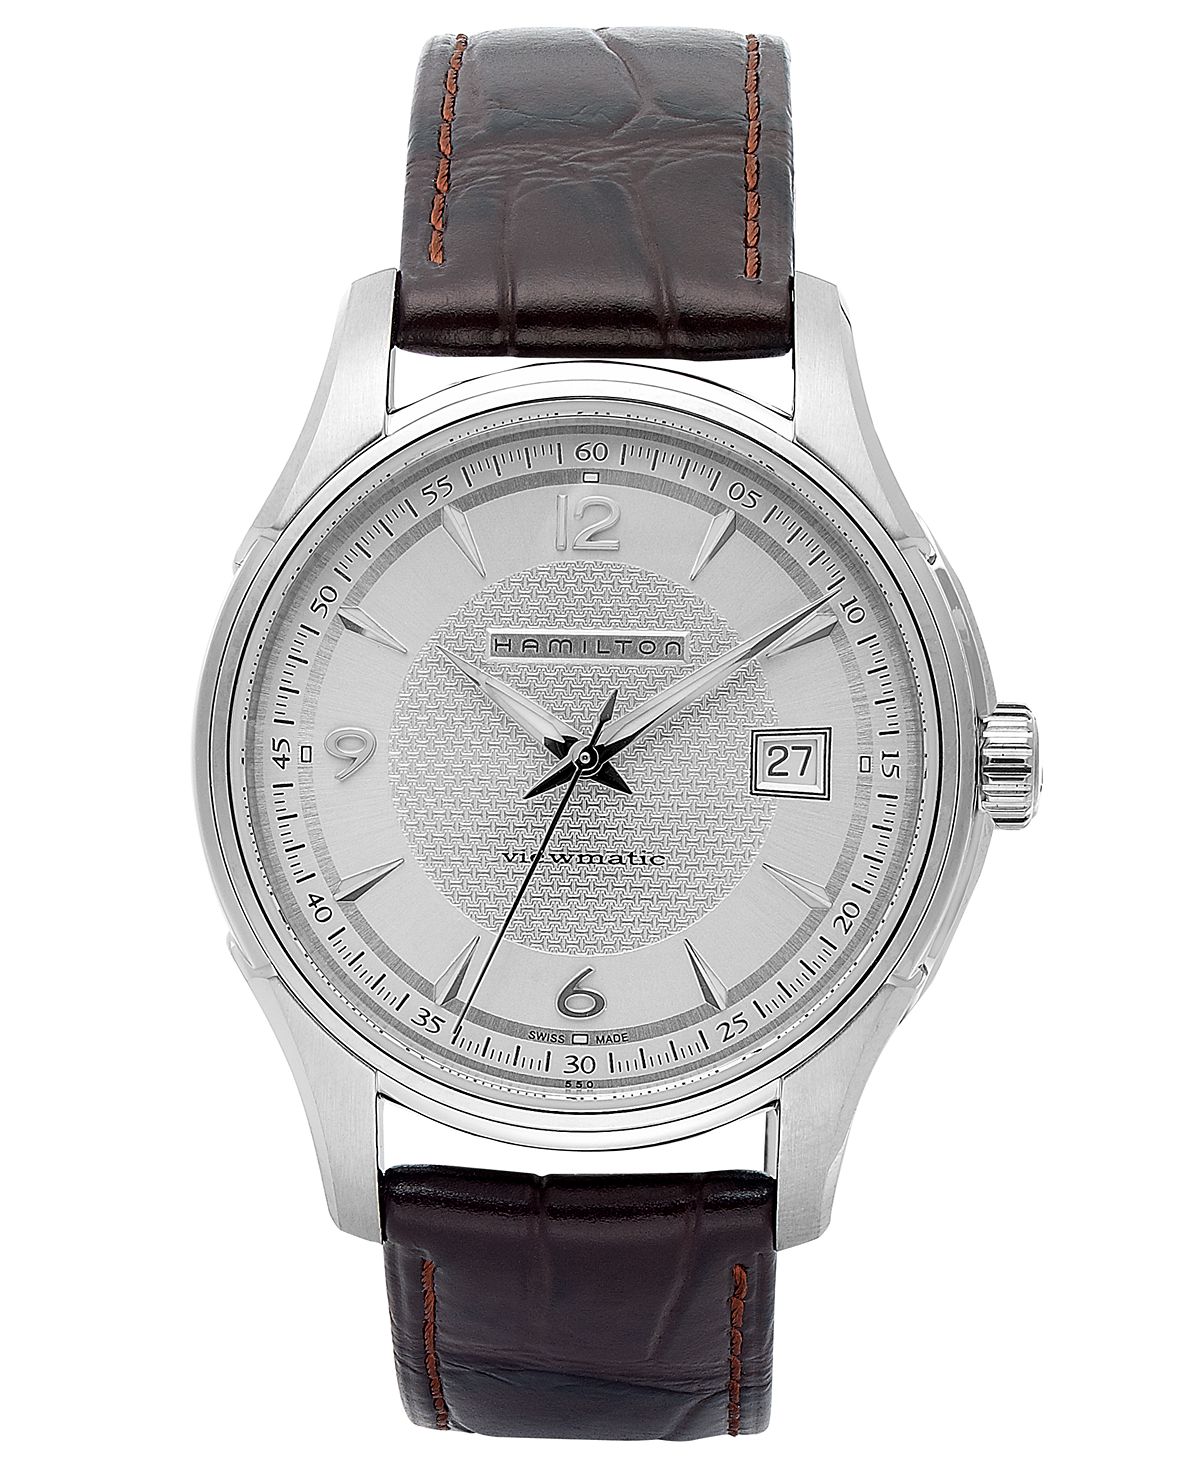 Мужские швейцарские автоматические часы Jazzmaster Viewmatic с коричневым кожаным ремешком 40 мм H32515555 Hamilton